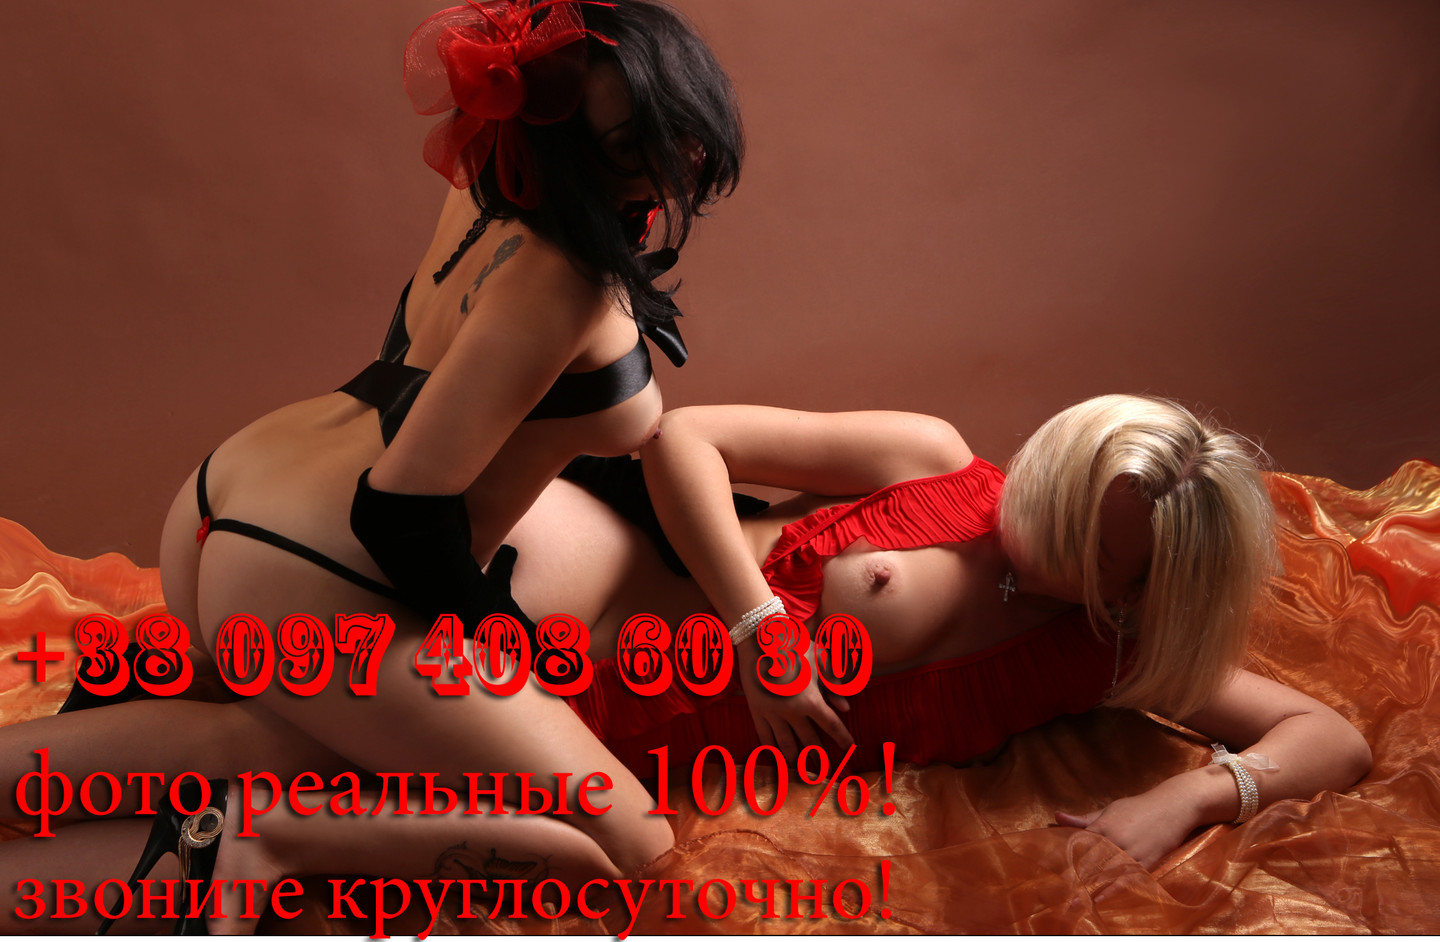 Проститутка Подружки, фото 4, тел: 0974086030. В центре города - Киев